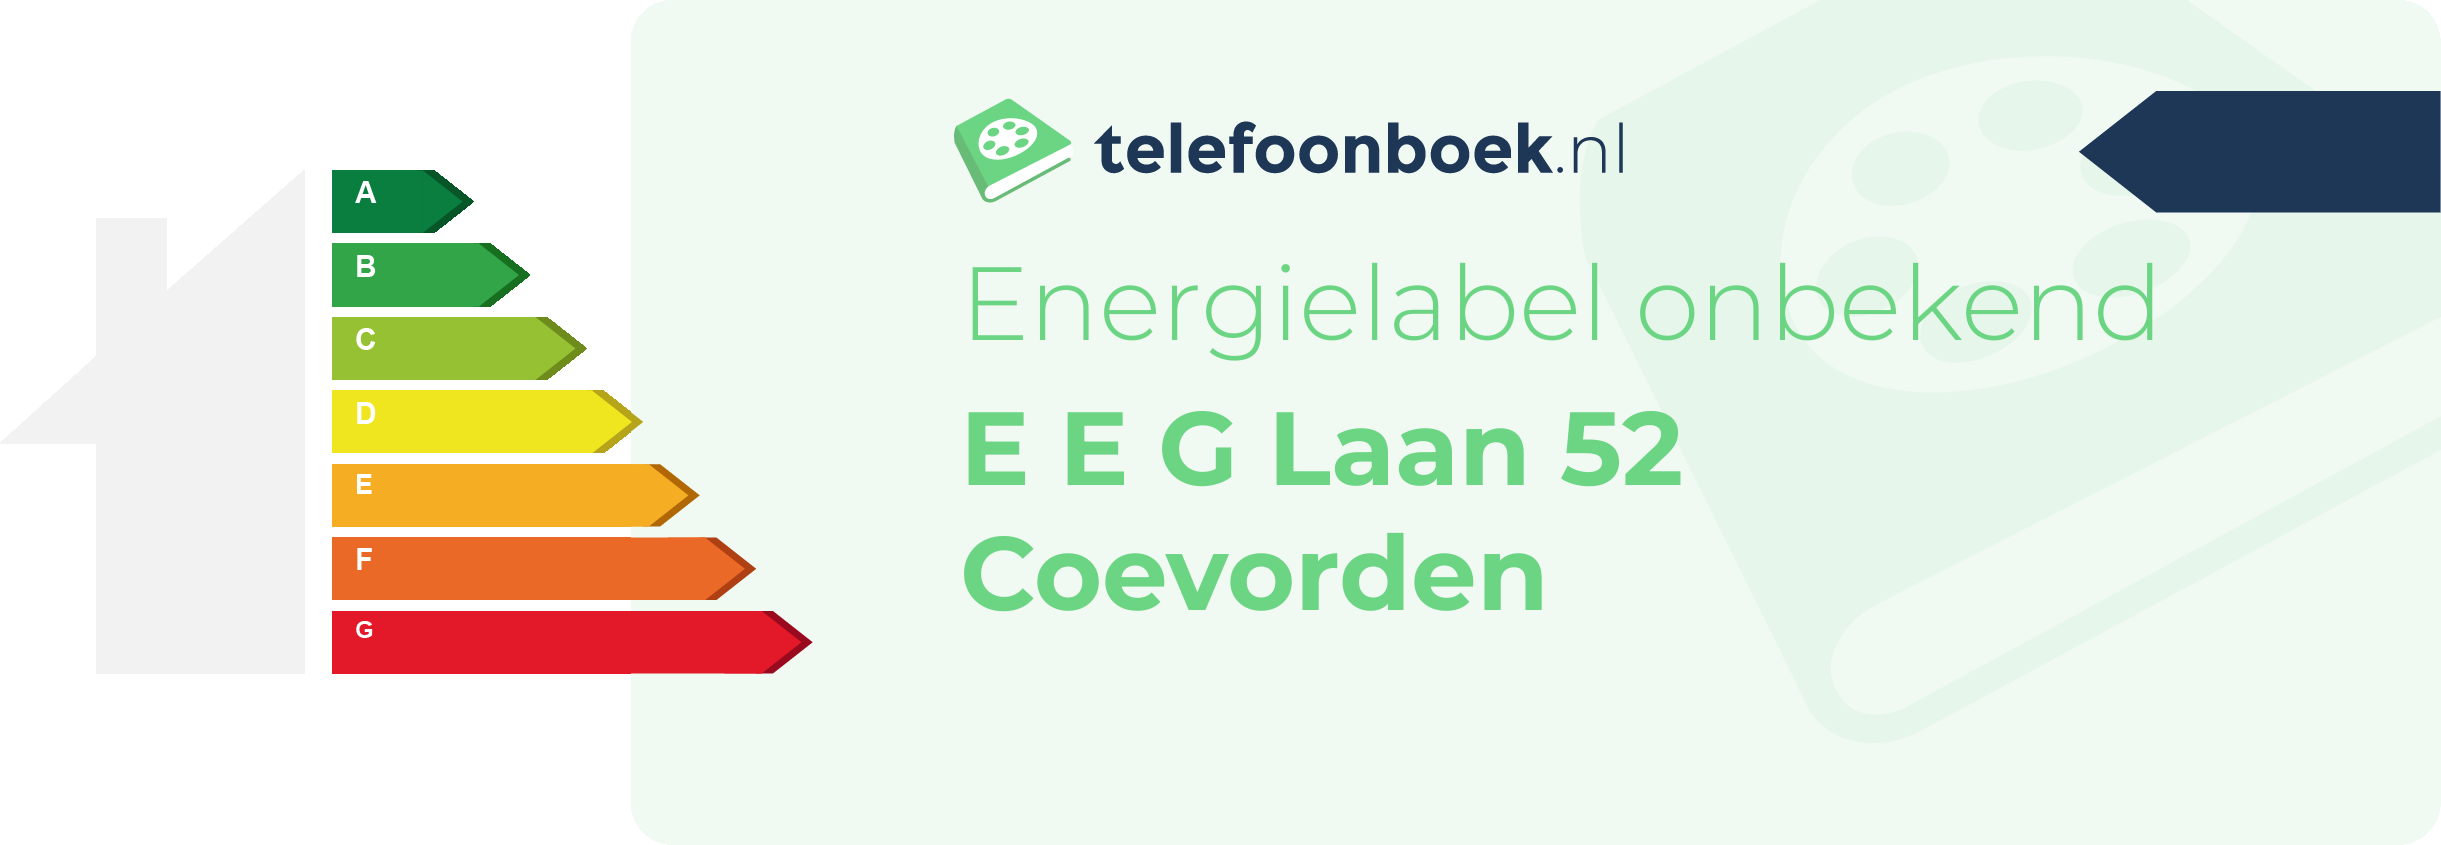 Energielabel E E G Laan 52 Coevorden